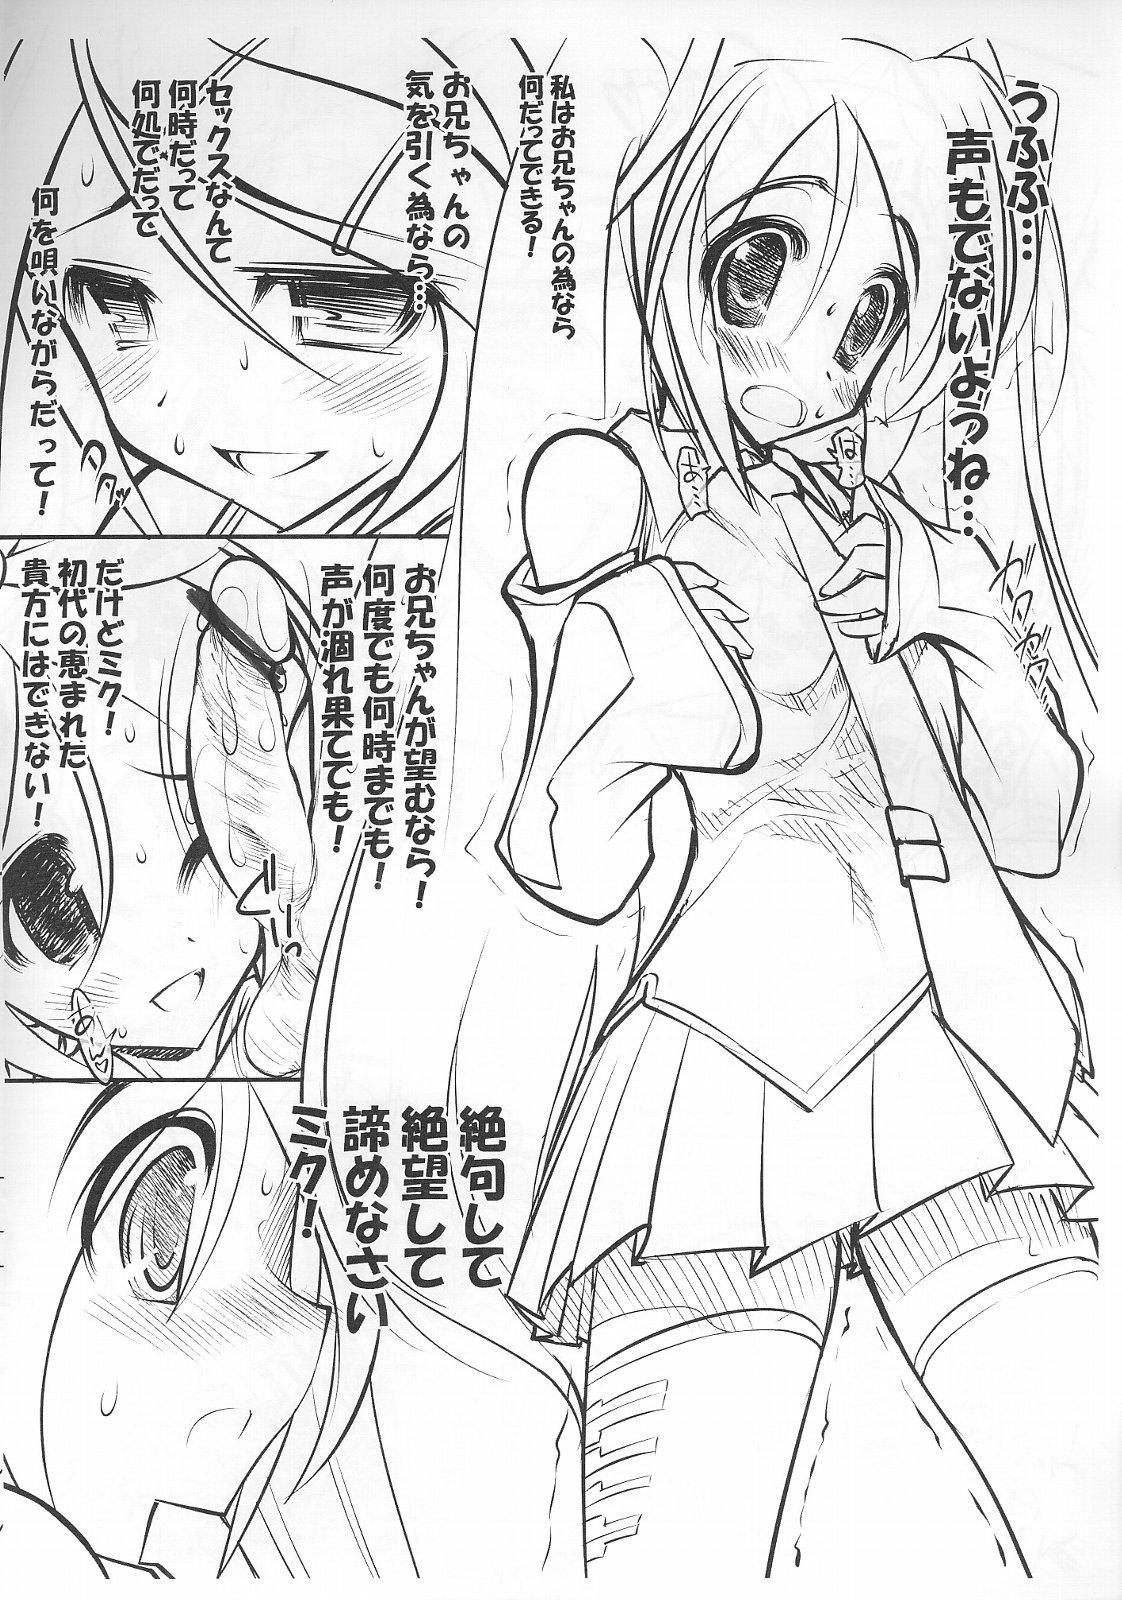 Oldman Hatsune Miku no Shitto - Vocaloid Ride - Page 4